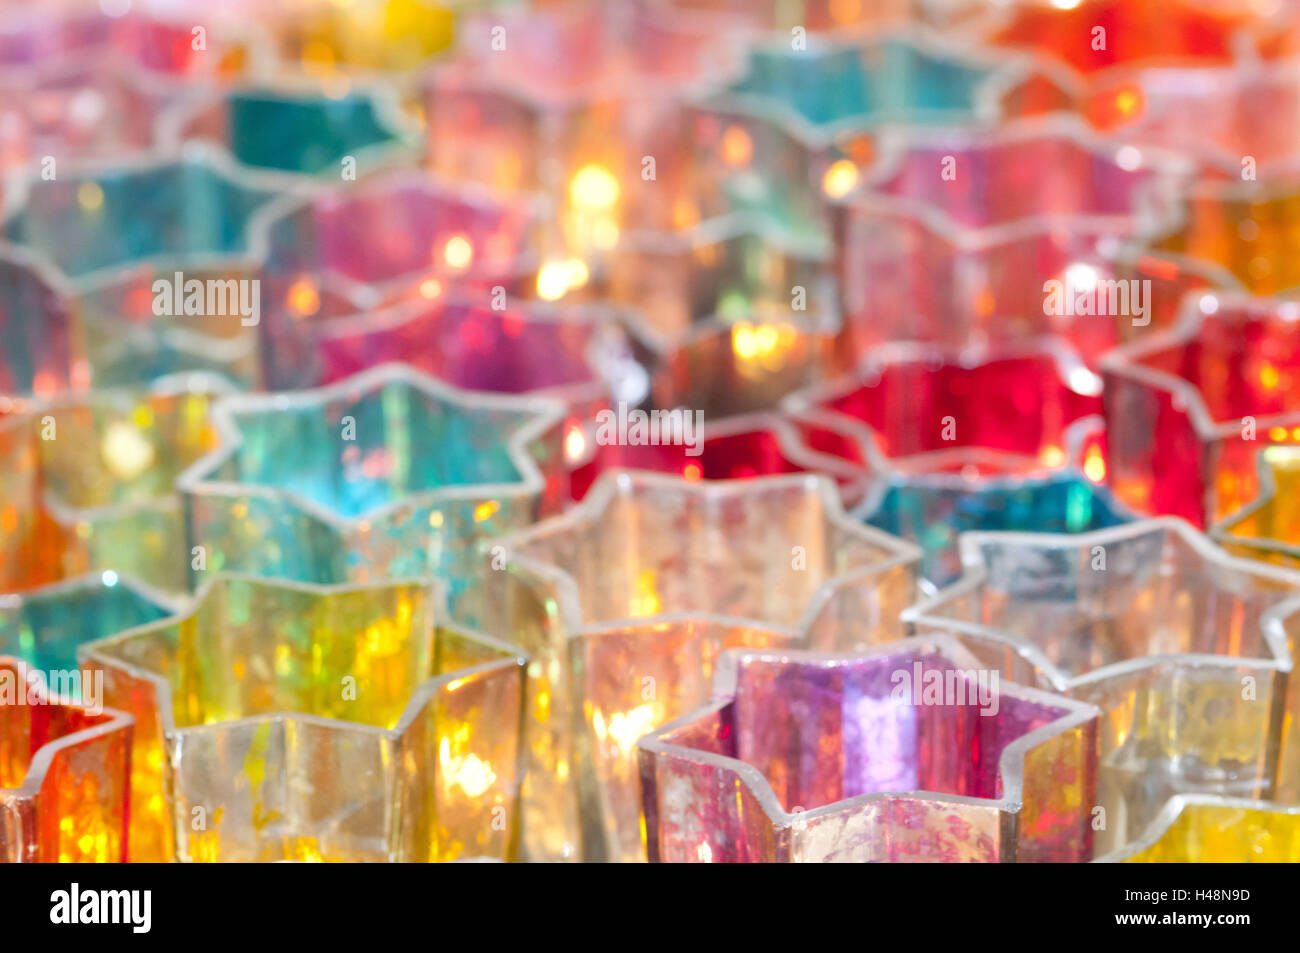 Las luces del viento, la luz de las velas en coloridos recipientes de vidrio, Foto de stock